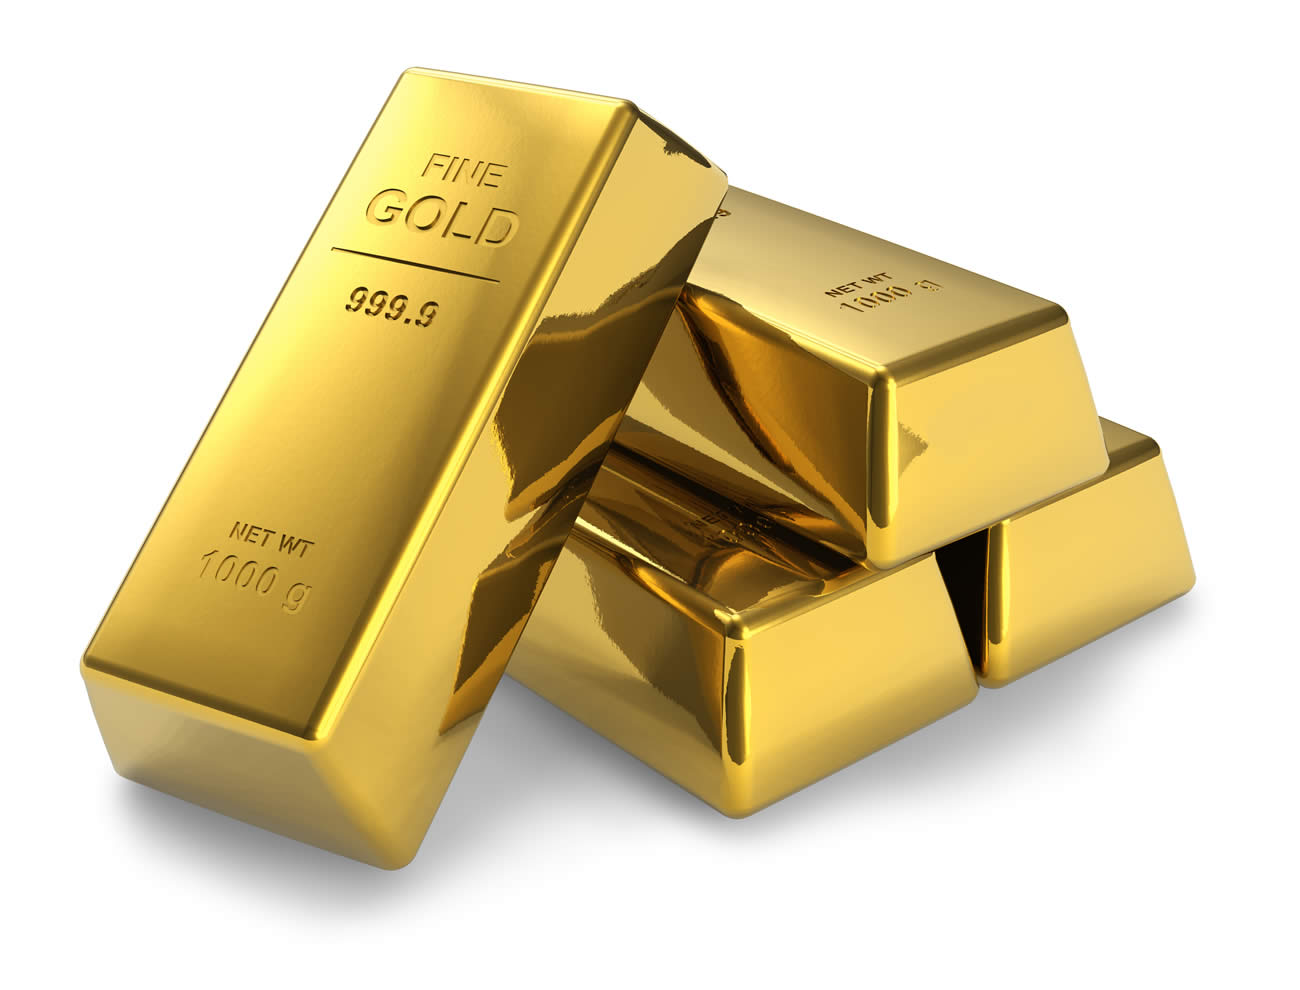 Vente de lingots d'or en supermarchés : Costco a osé, un succès total -  , guide de l'épargne